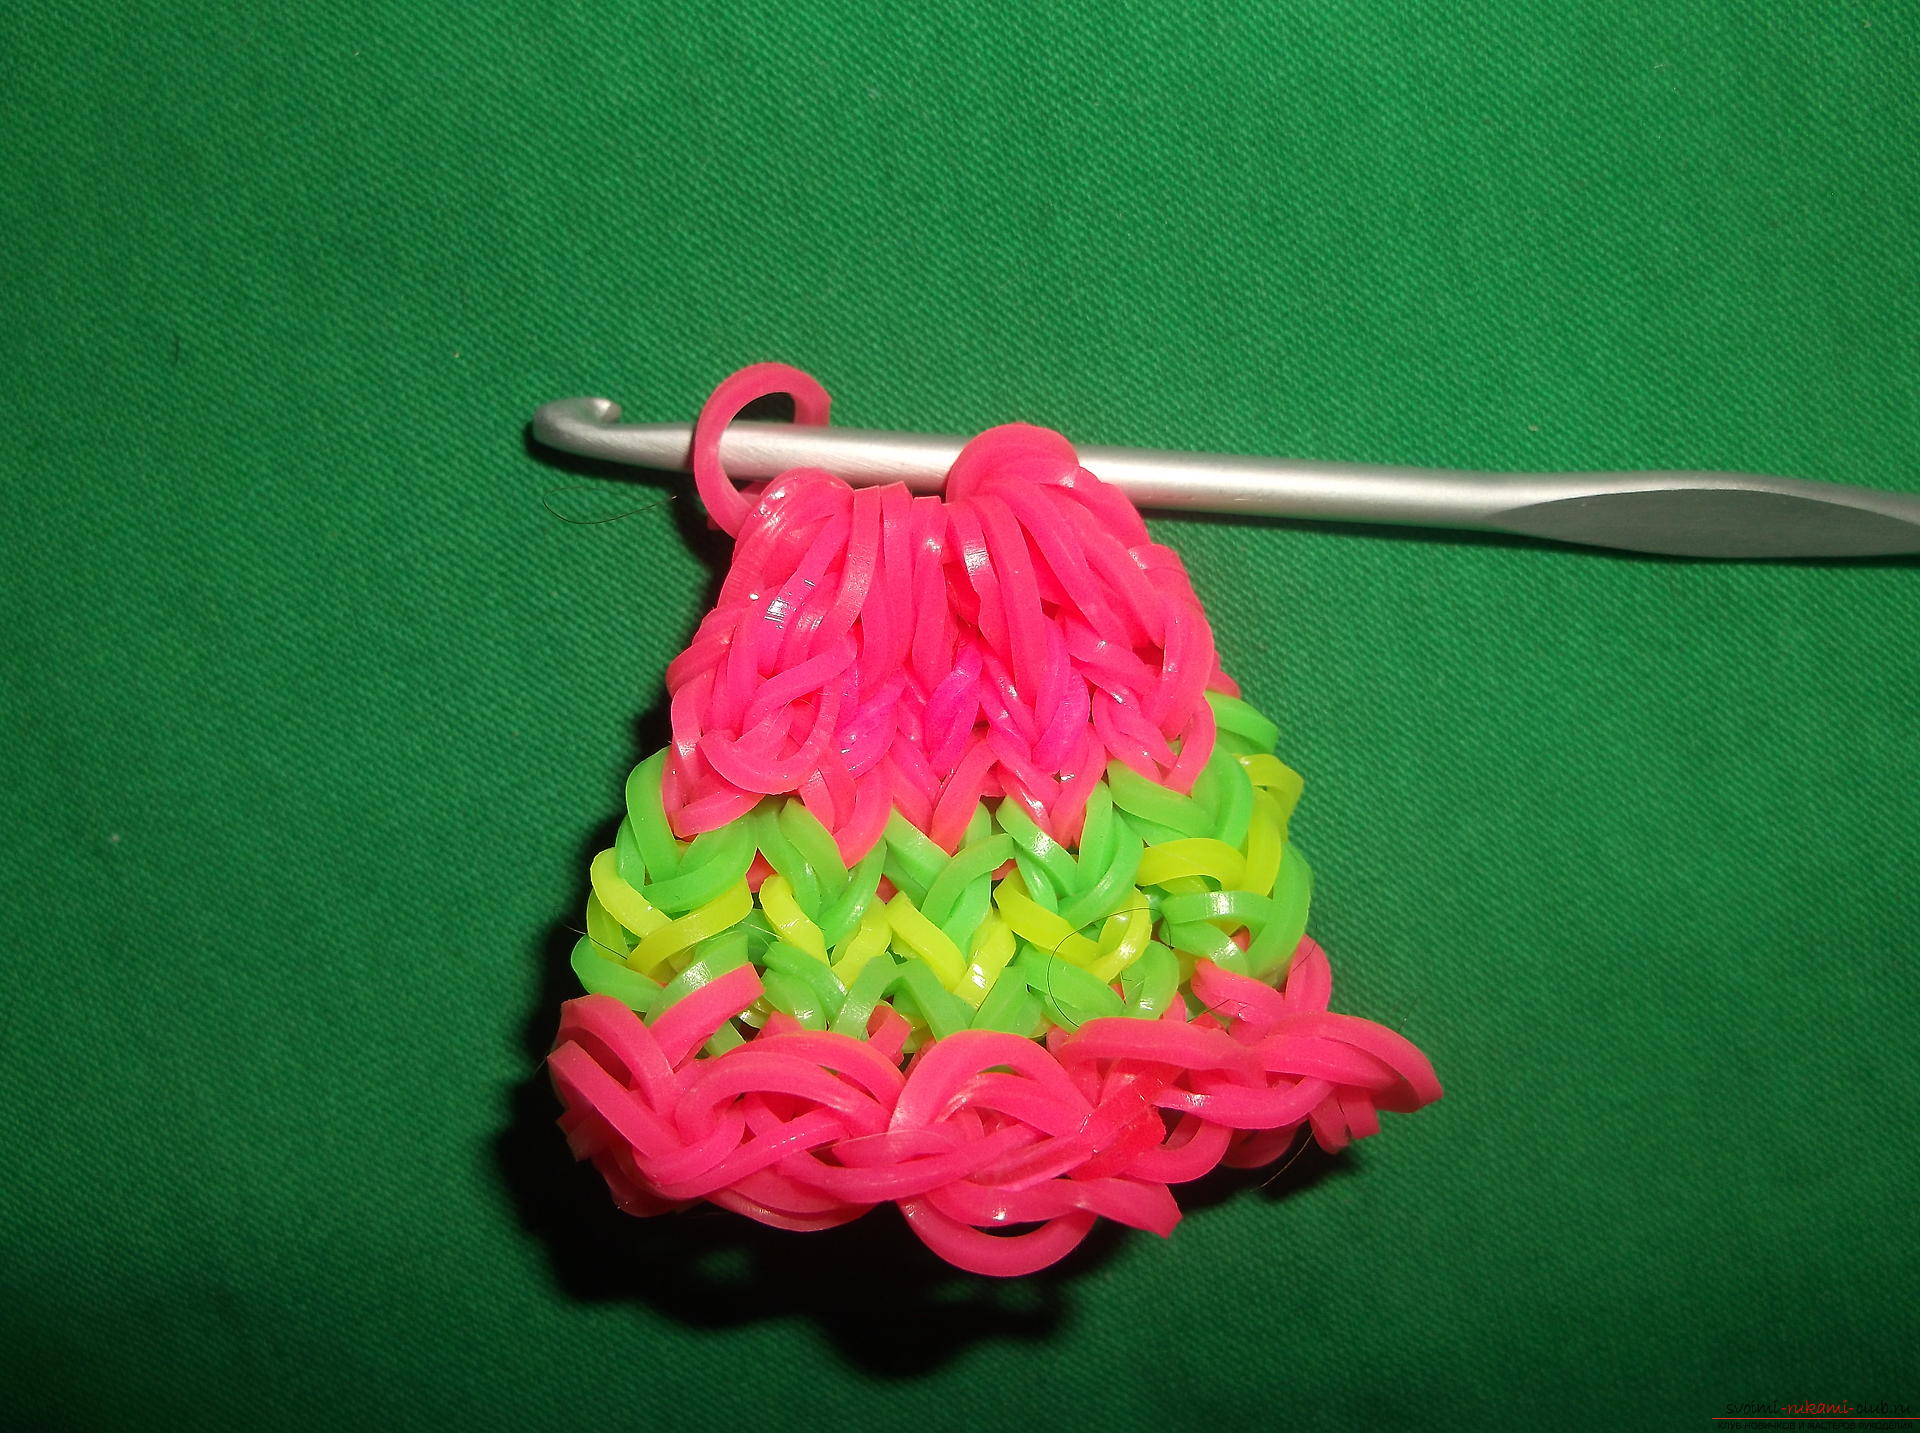 Фото к уроку по плетению из резиночек елочного шарика. Фото №8